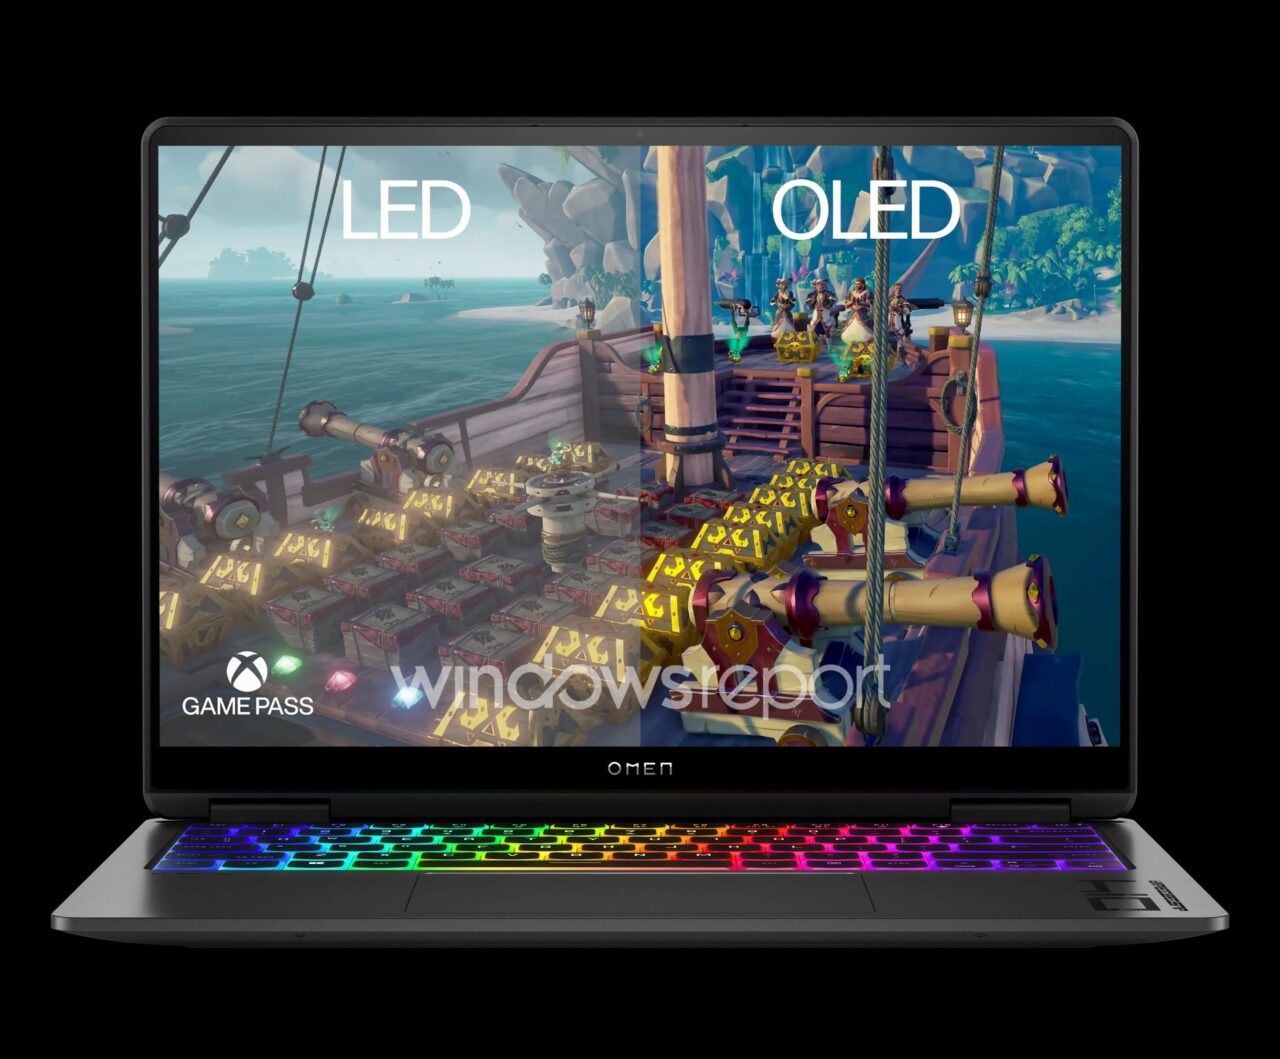 Laptop gamingowy marki OMEN z kolorową klawiaturą podświetlaną RGB, na ekranie wyświetlona jest grafika z gry wideo z napisami LED i OLED oraz logotypami Xbox Game Pass i Windowsreport.